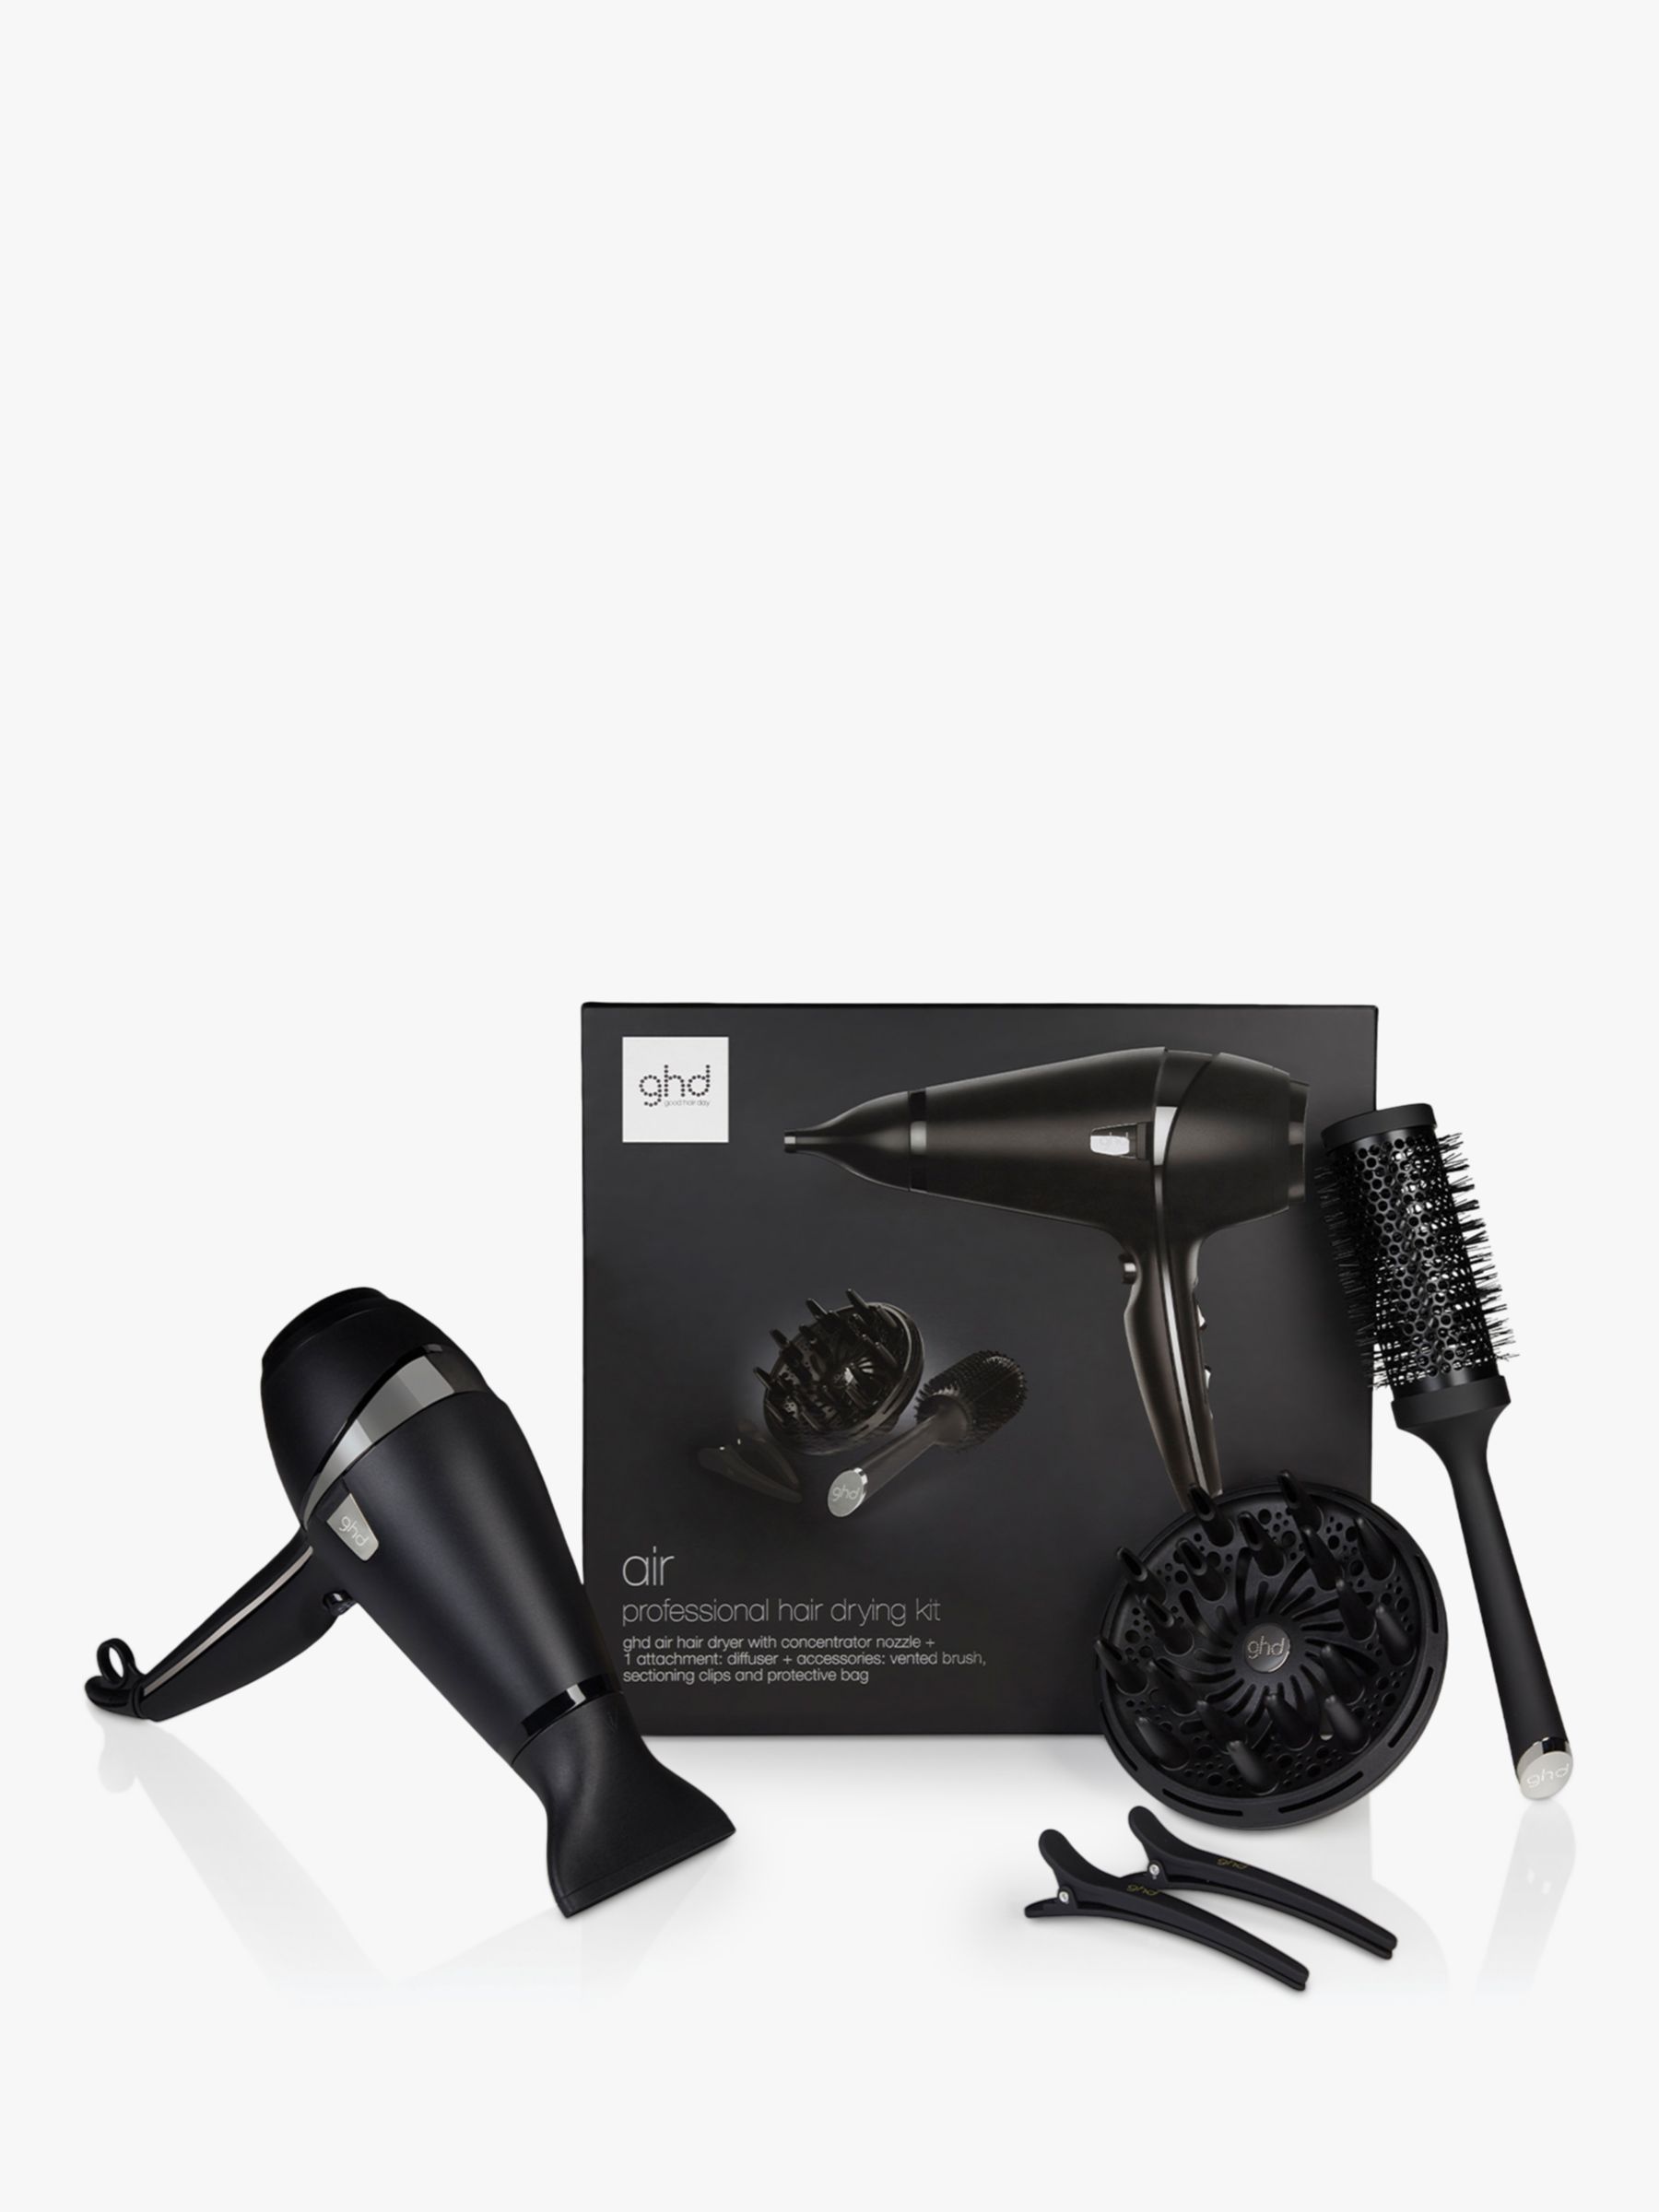 ghd Air 2.0 Hair Drying Kit, Black